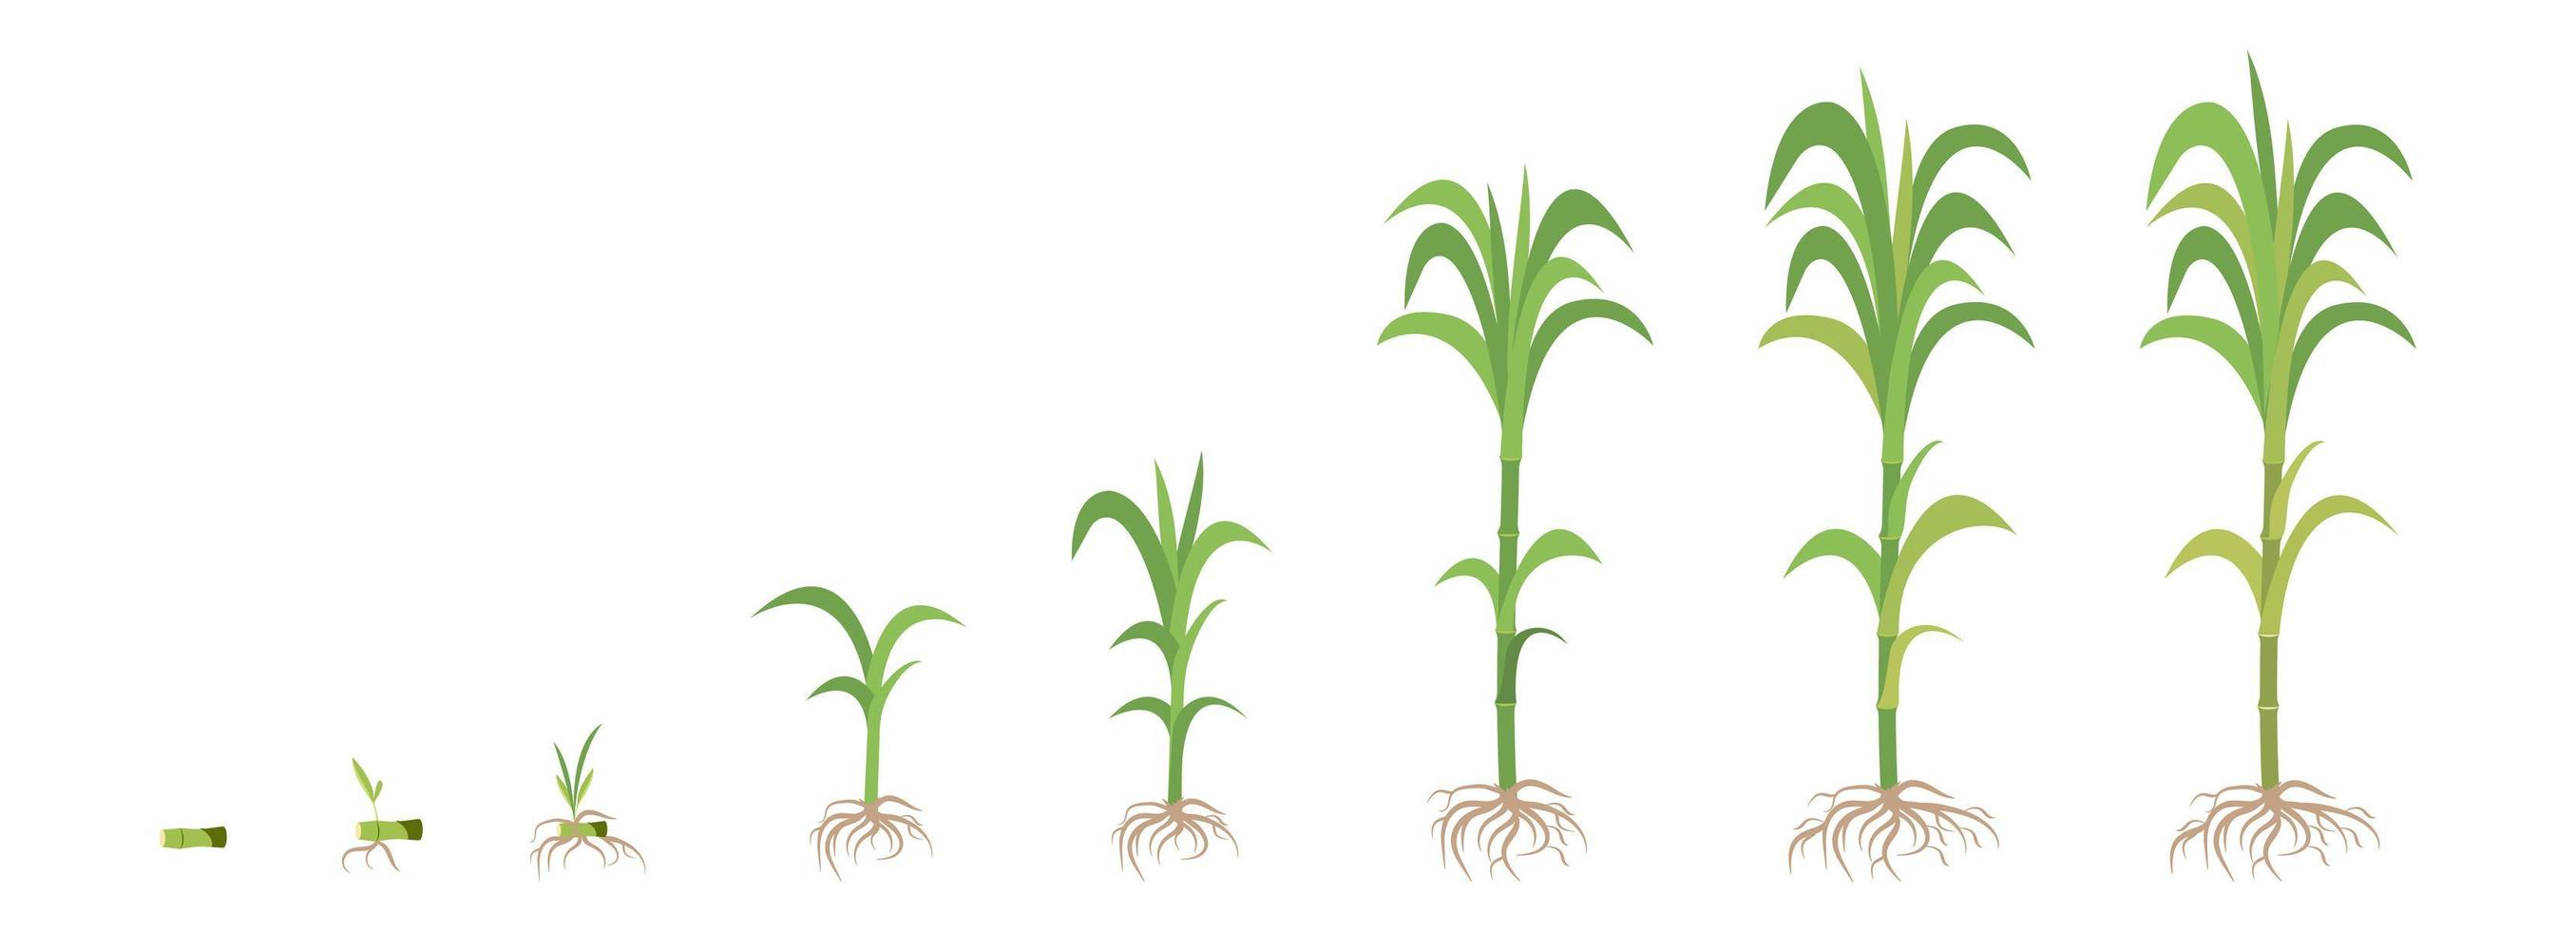 Fases de crecimiento del cultivo de la caña de azúcar desde la siembra hasta la madurez. vector